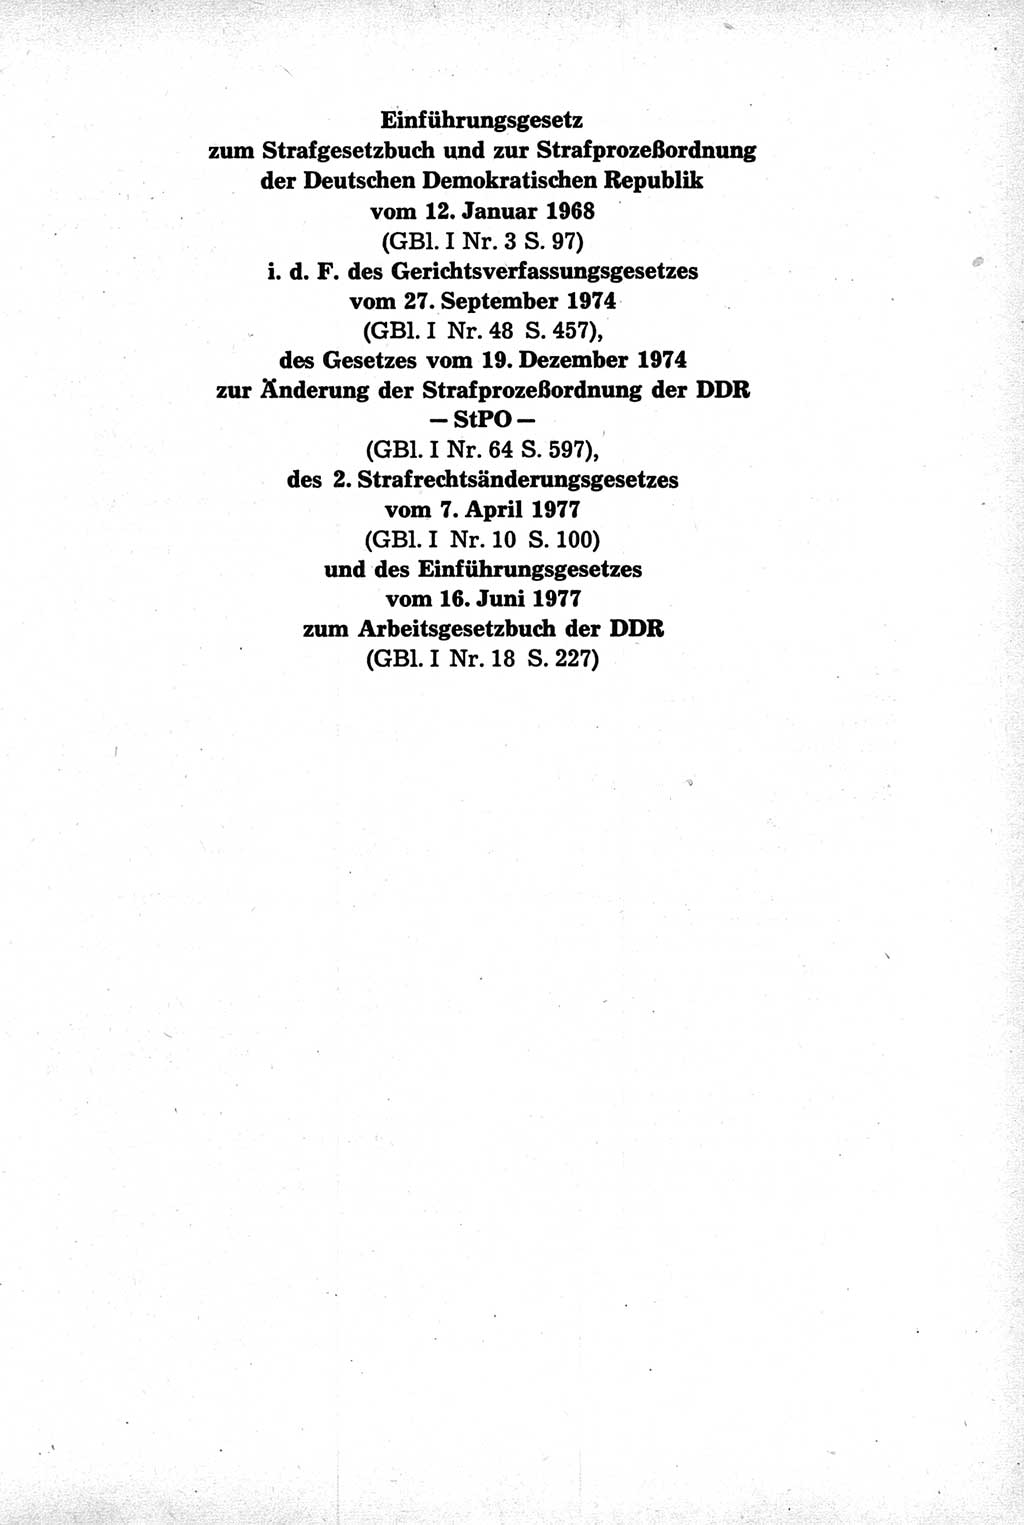 Strafrecht der Deutschen Demokratischen Republik (DDR), Kommentar zum Strafgesetzbuch (StGB) 1981, Seite 611 (Strafr. DDR Komm. StGB 1981, S. 611)